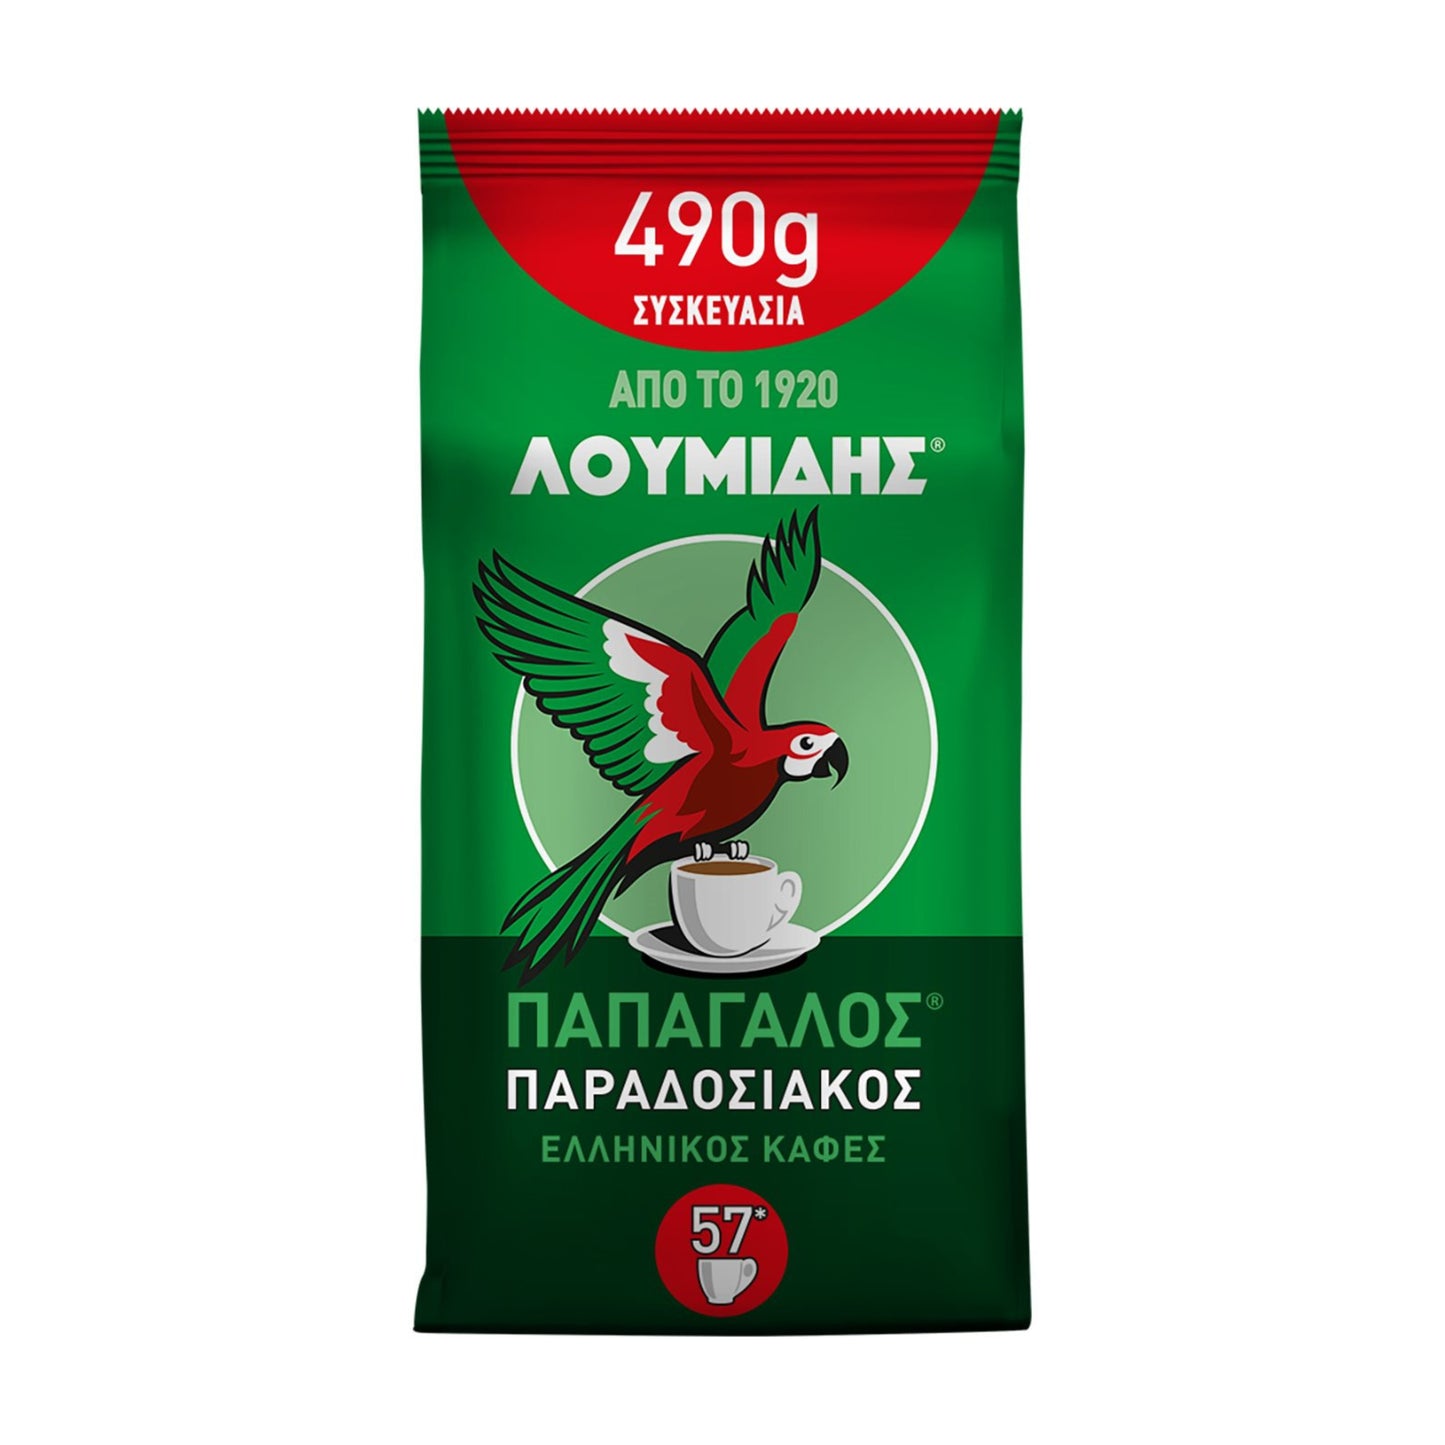 Caffè greco Loumidis - 490g